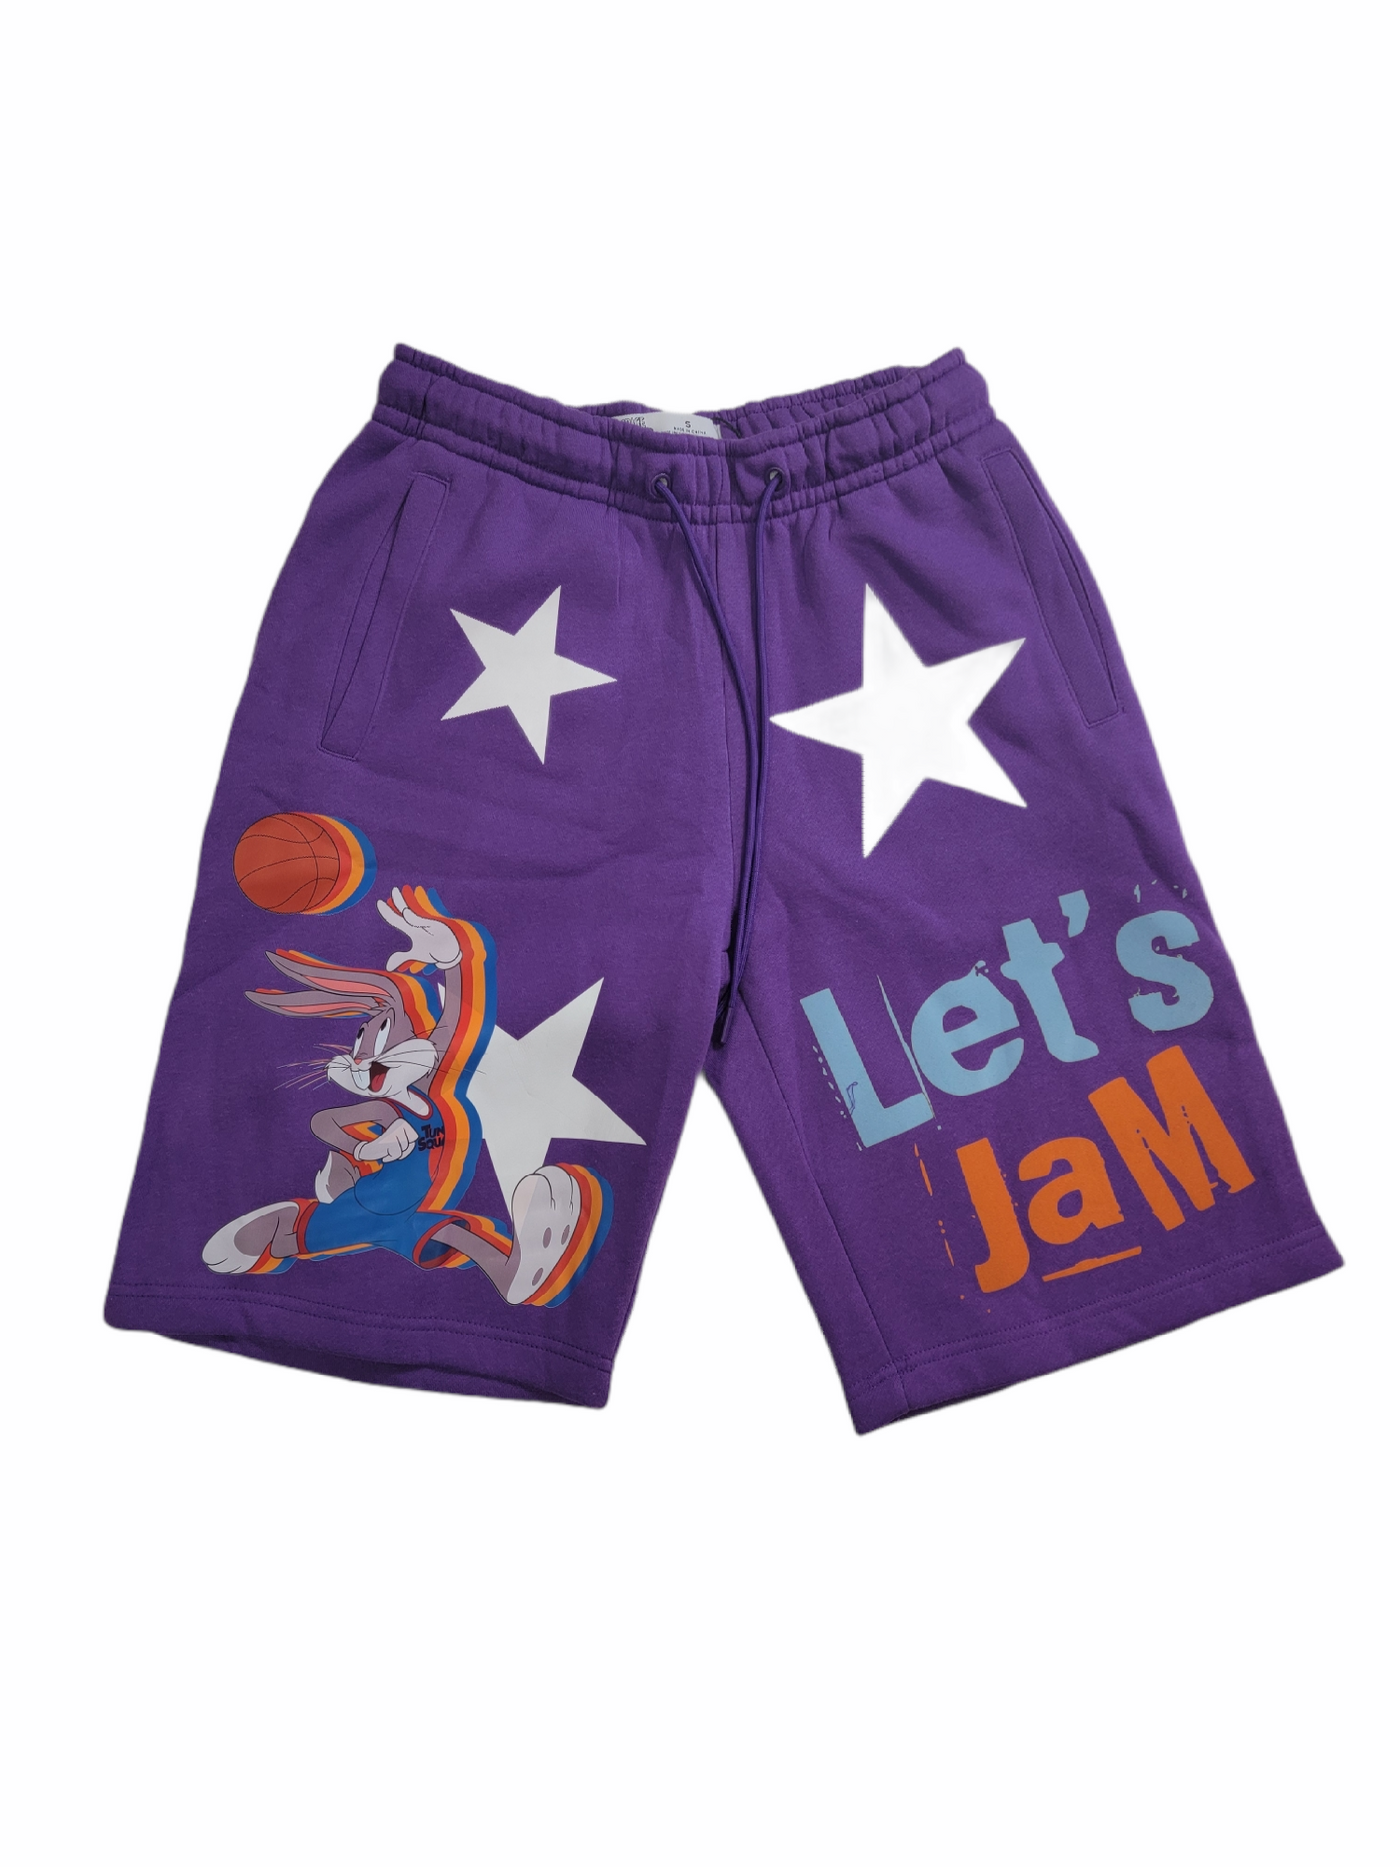 Space Jam Lets Jam Shorts Purple